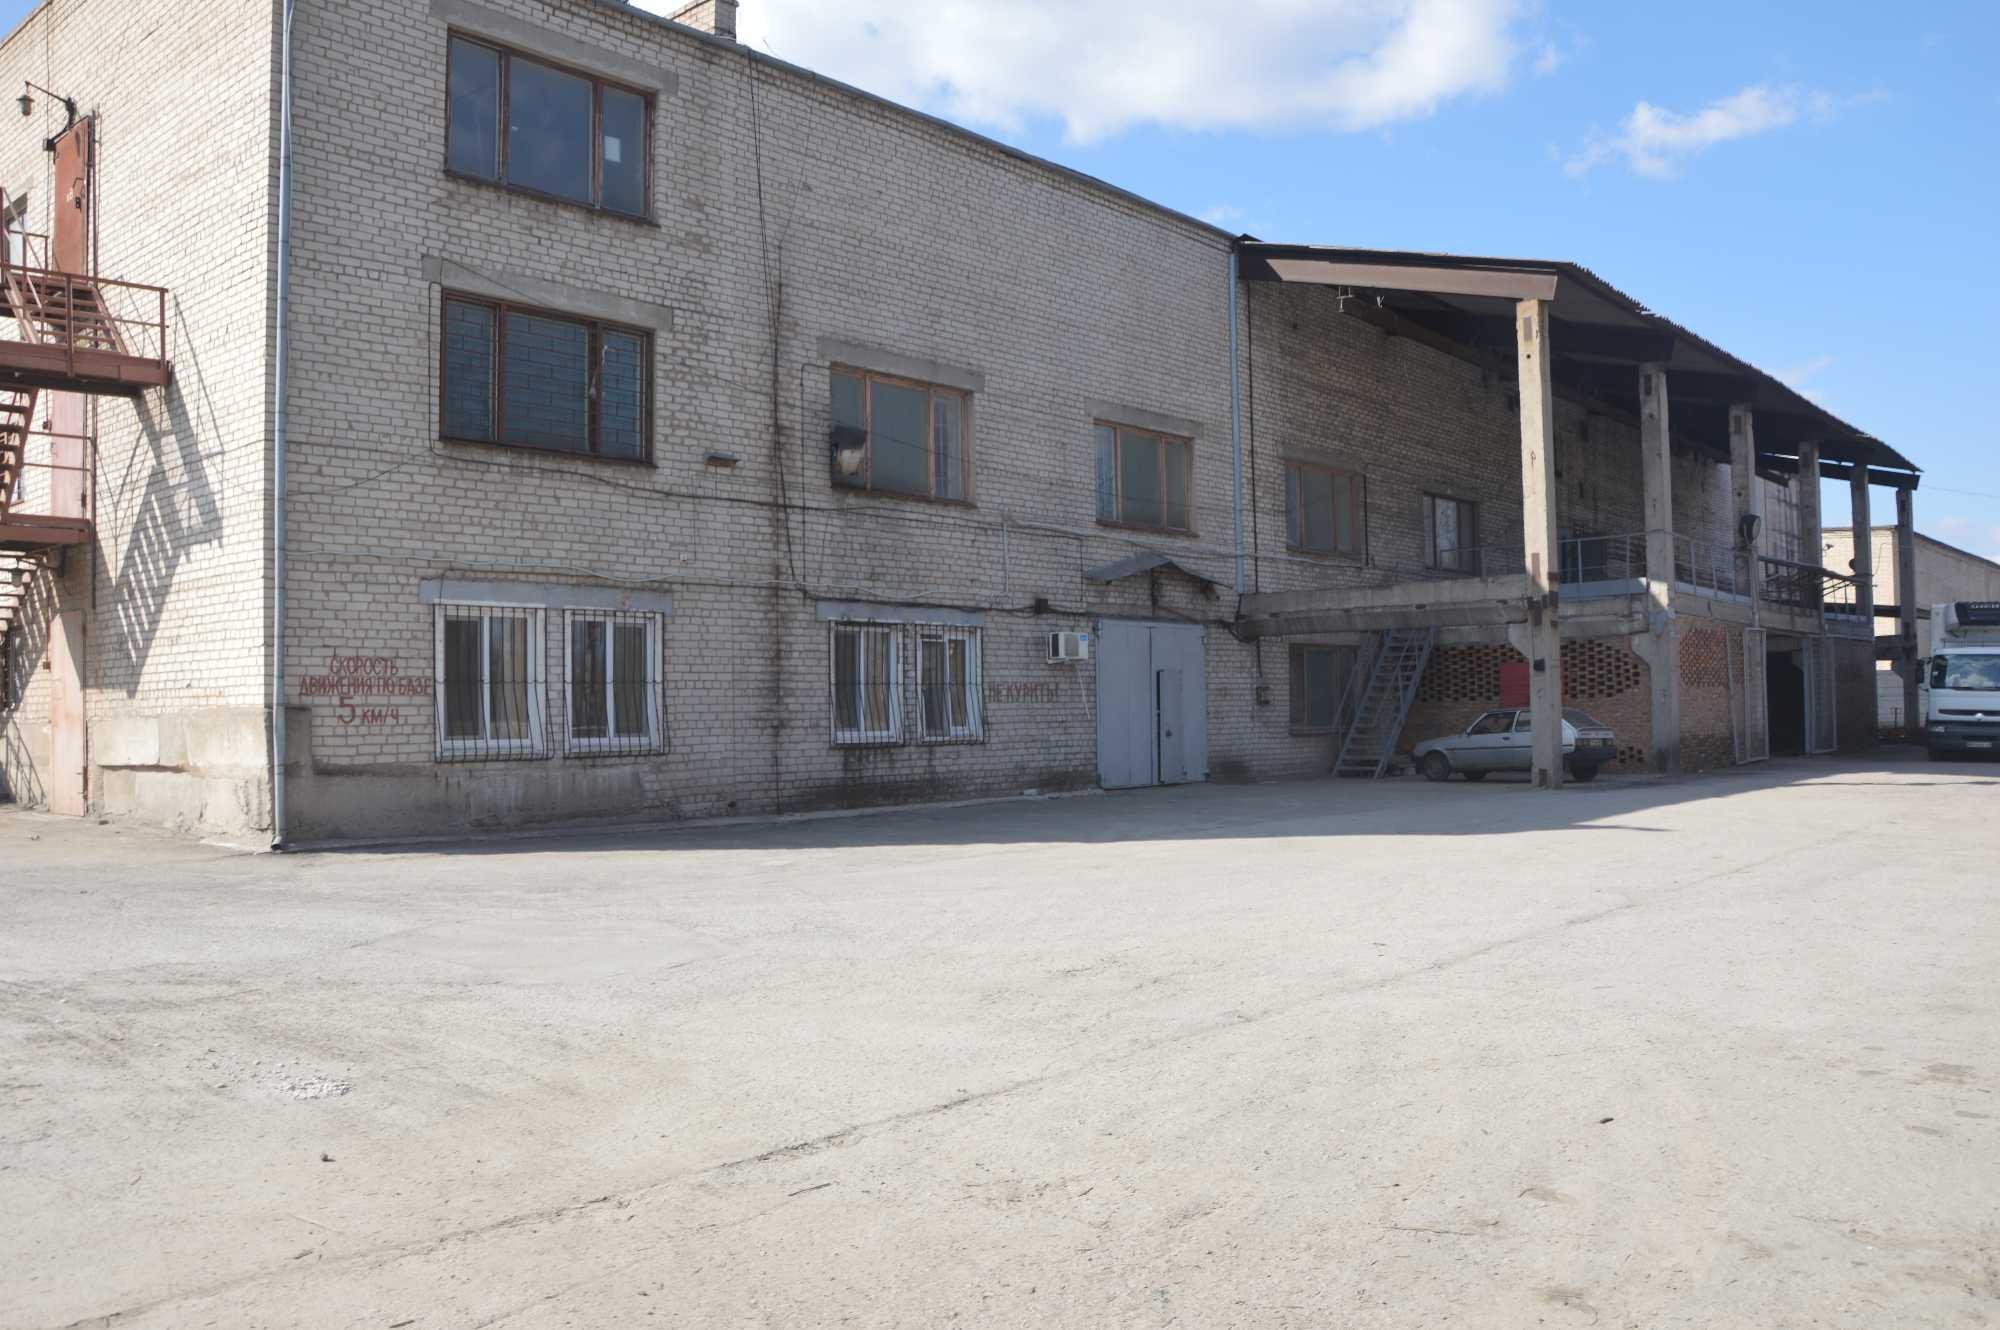 Оренда складського комплексу, Запоріжжя від 2000 до 4000 кв.м. Власник